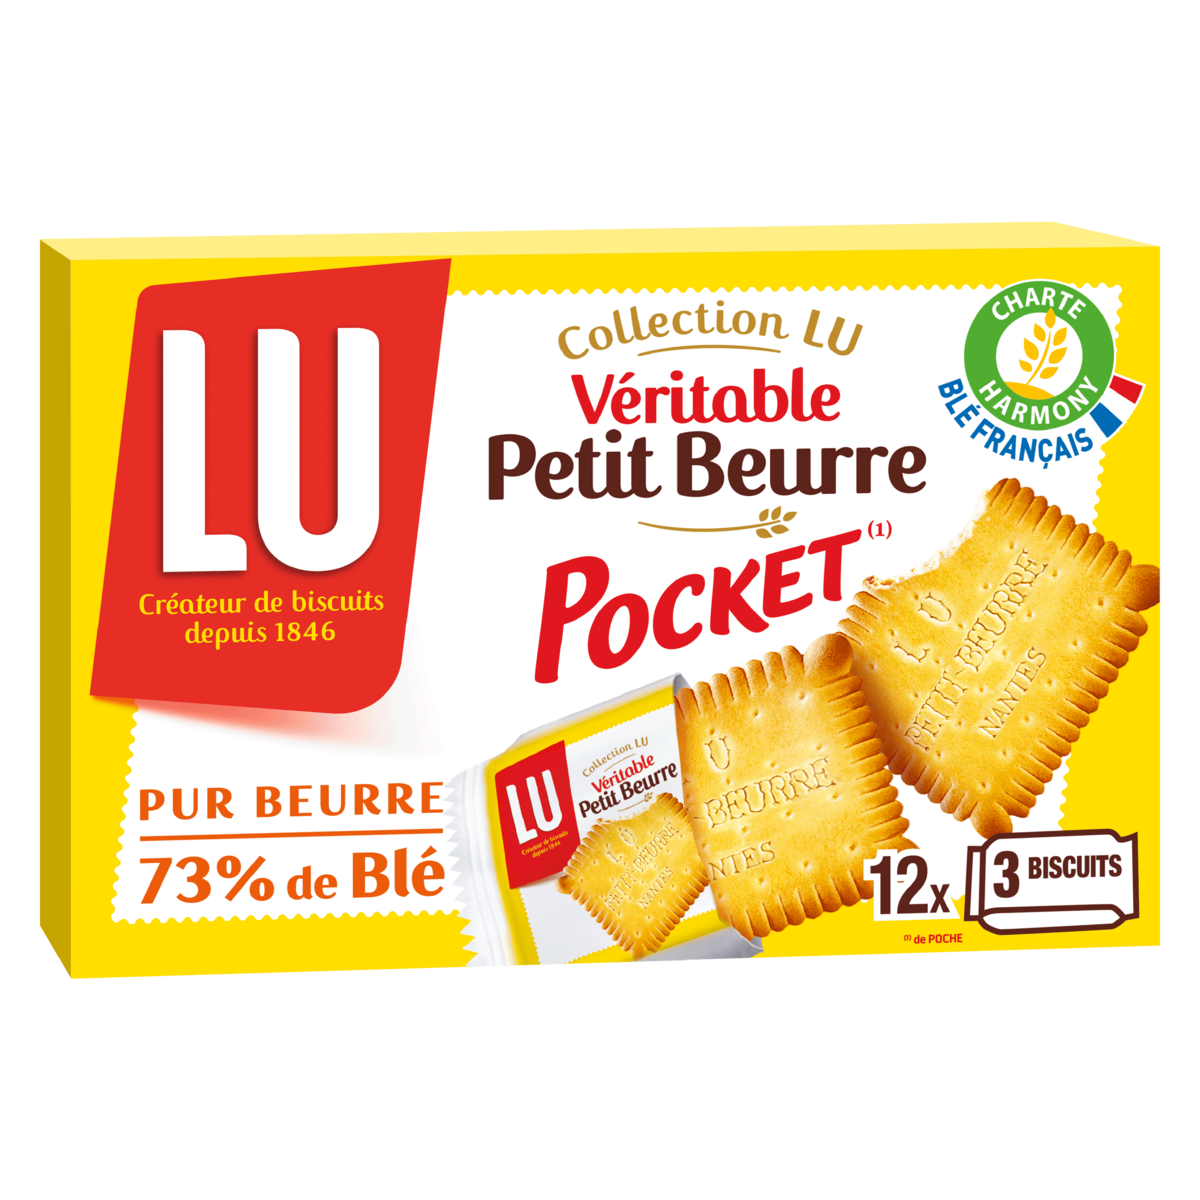 LU Biscuits véritable petit beurre pocket, sachets fraîcheur 12x3 biscuits 300g